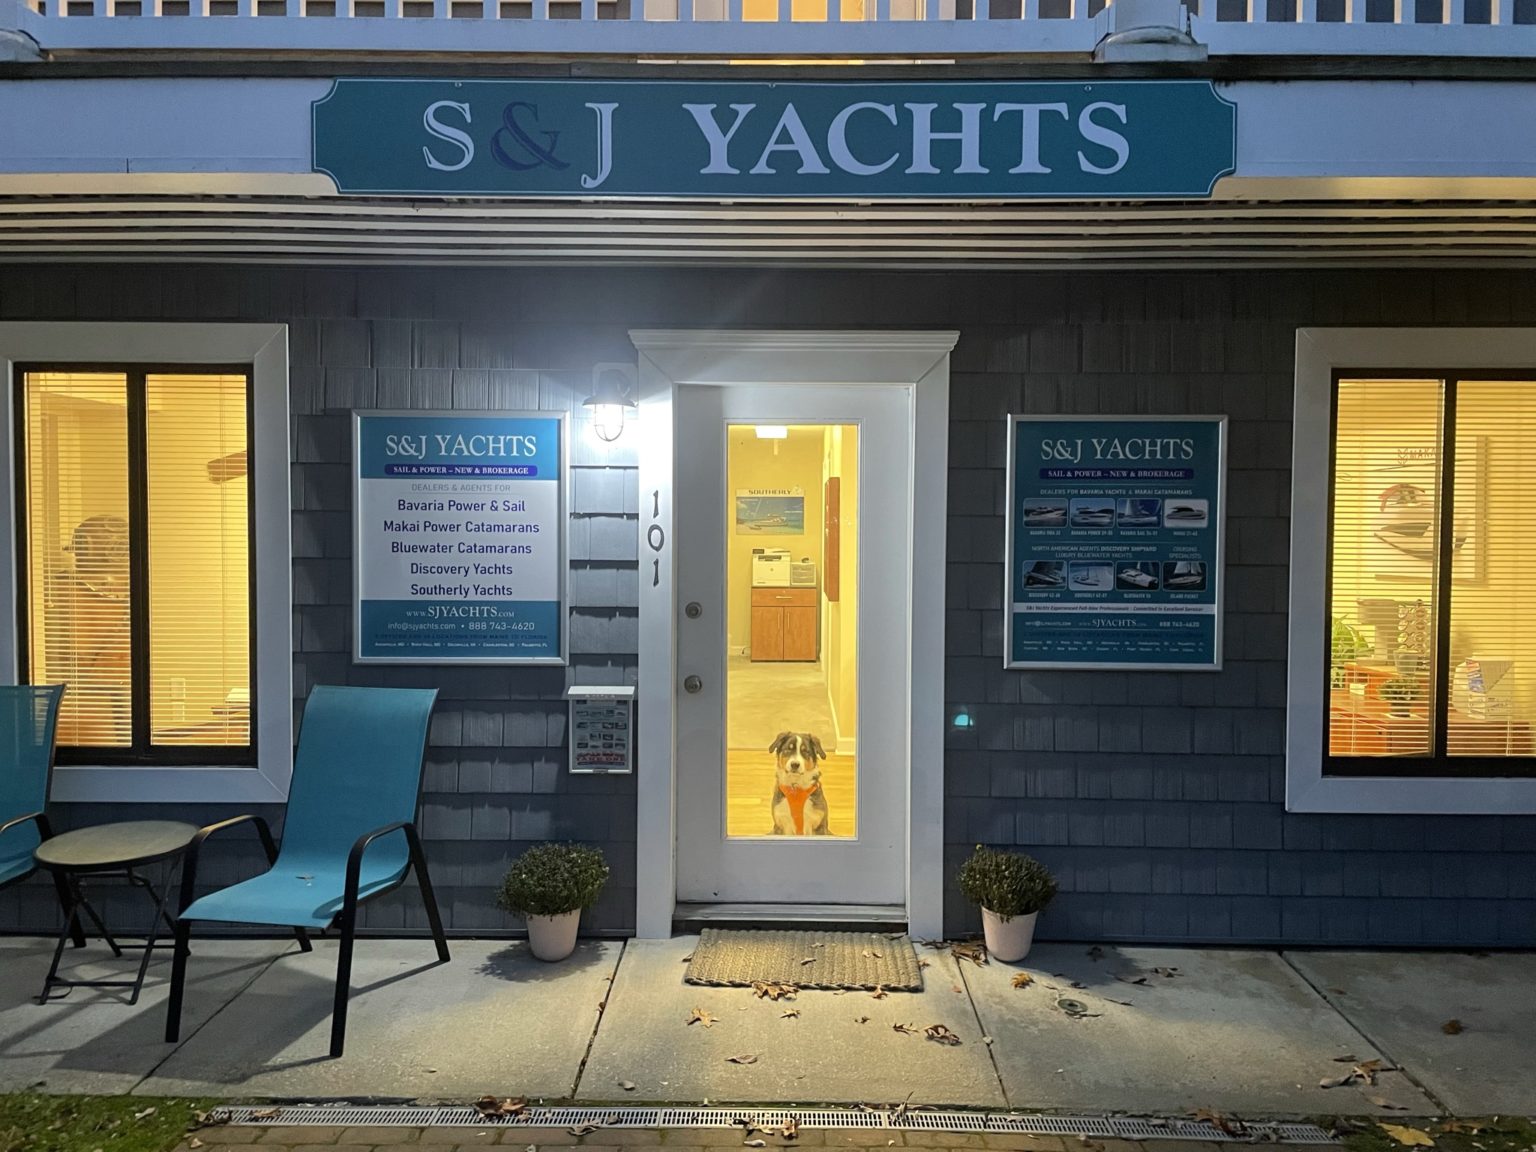 s&j yacht sales